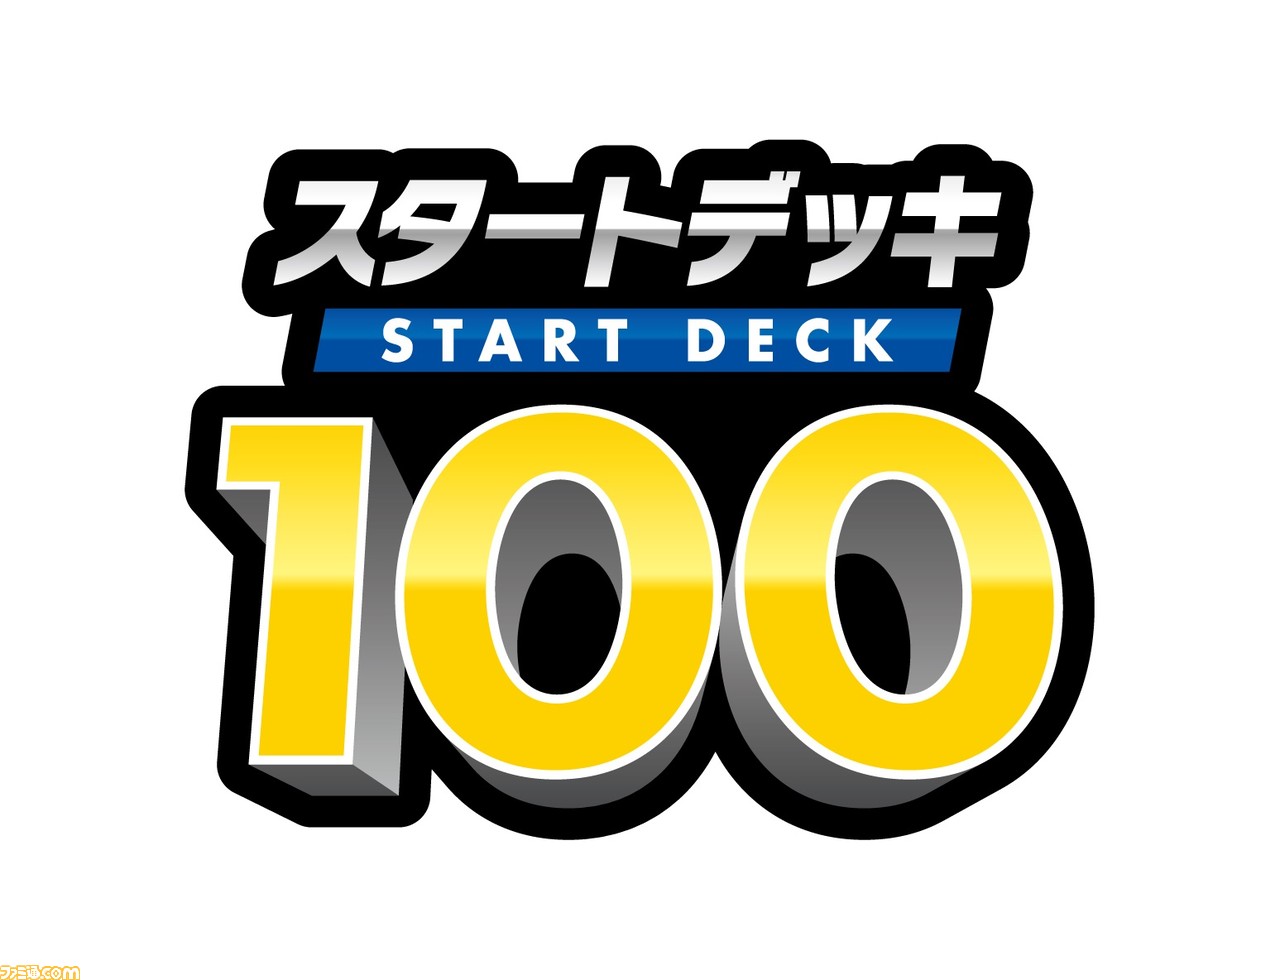 ポケカ スタートデッキ100 が12月17日に発売 新カードも収録された100種類の構築デッキからランダムで1種類が封入 ゲーム エンタメ最新情報のファミ通 Com